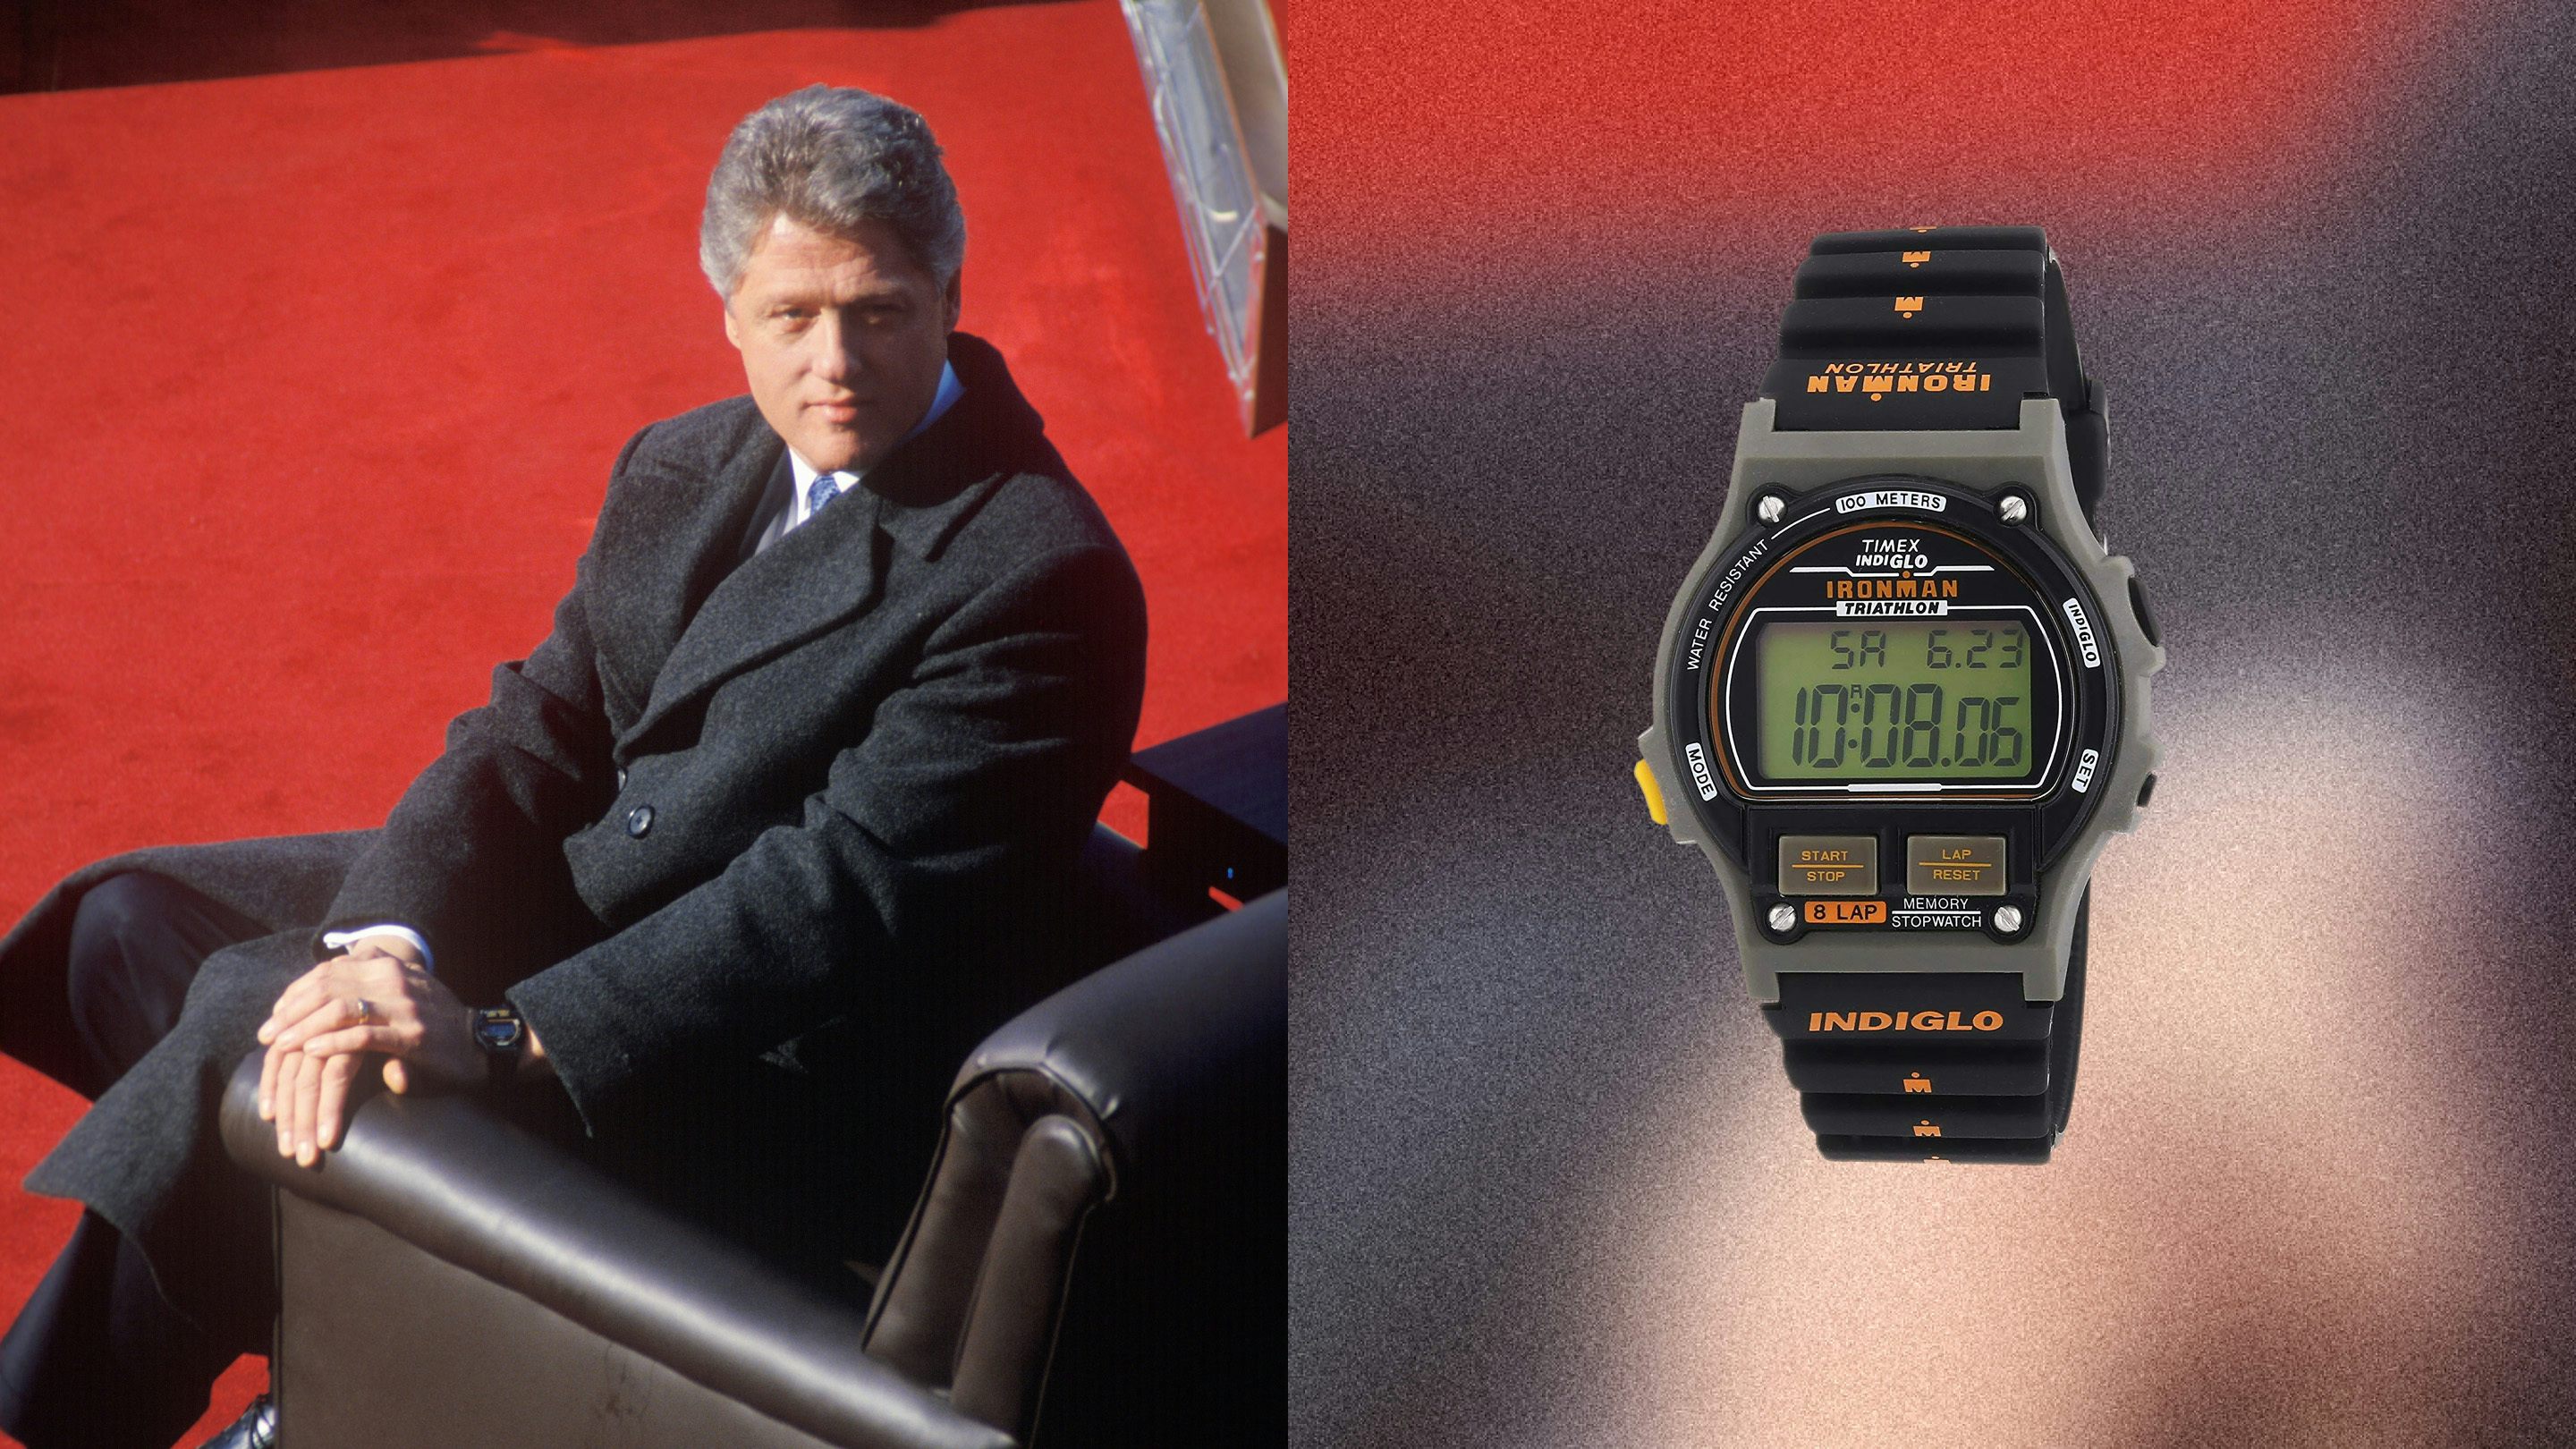 クリントン大統領の腕時計はタイメックスのアイアンマン 